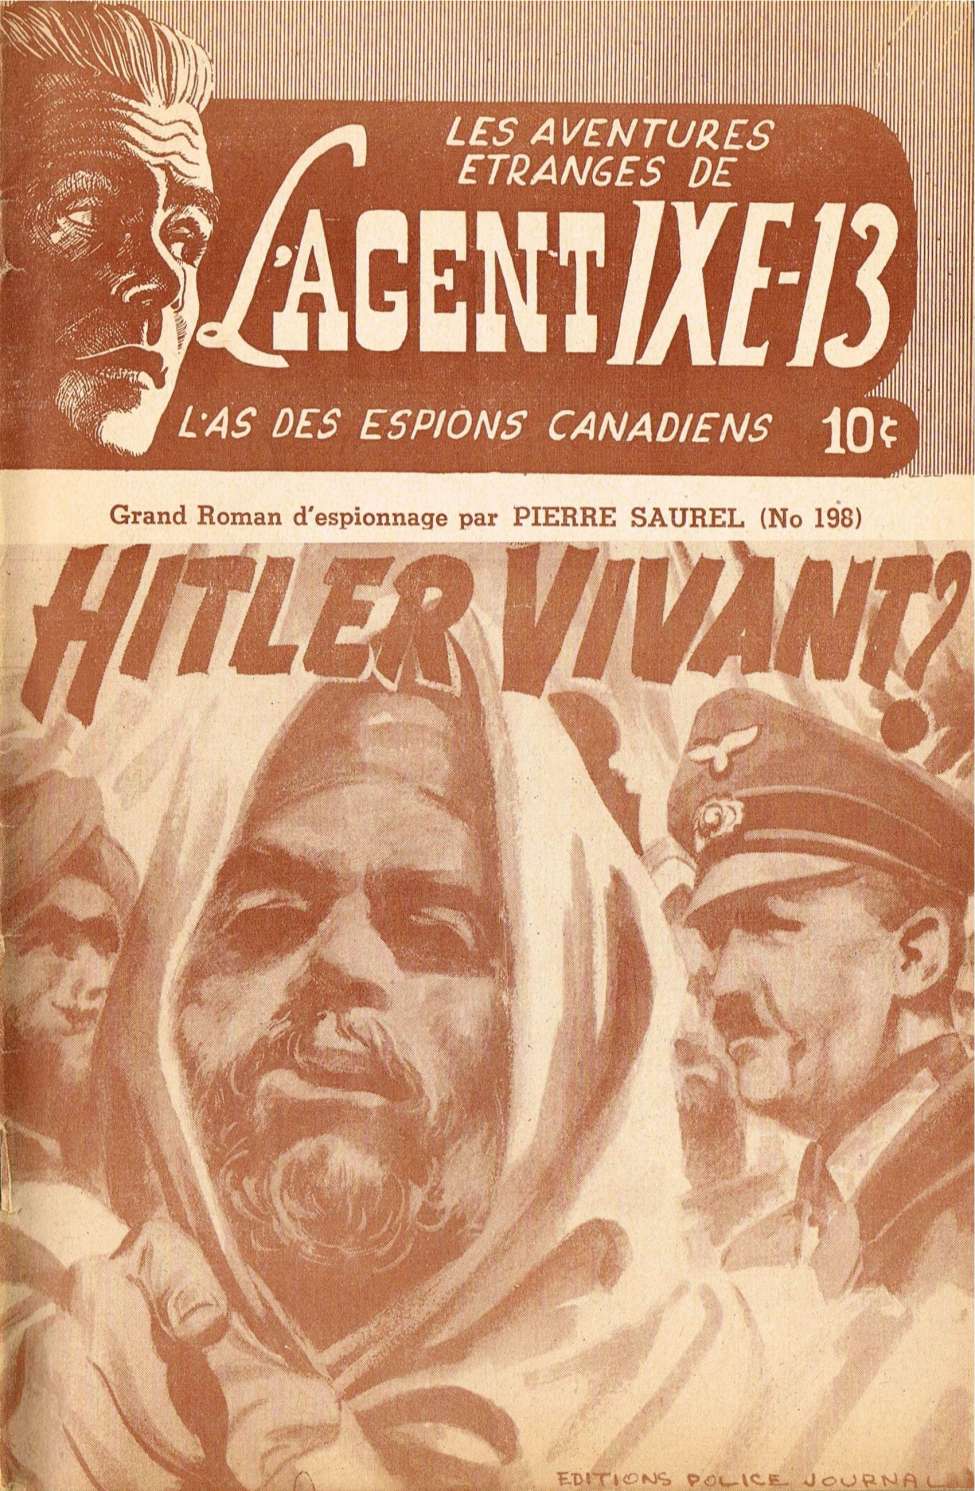 Book Cover For L'Agent IXE-13 v2 198 - Hitler vivant?